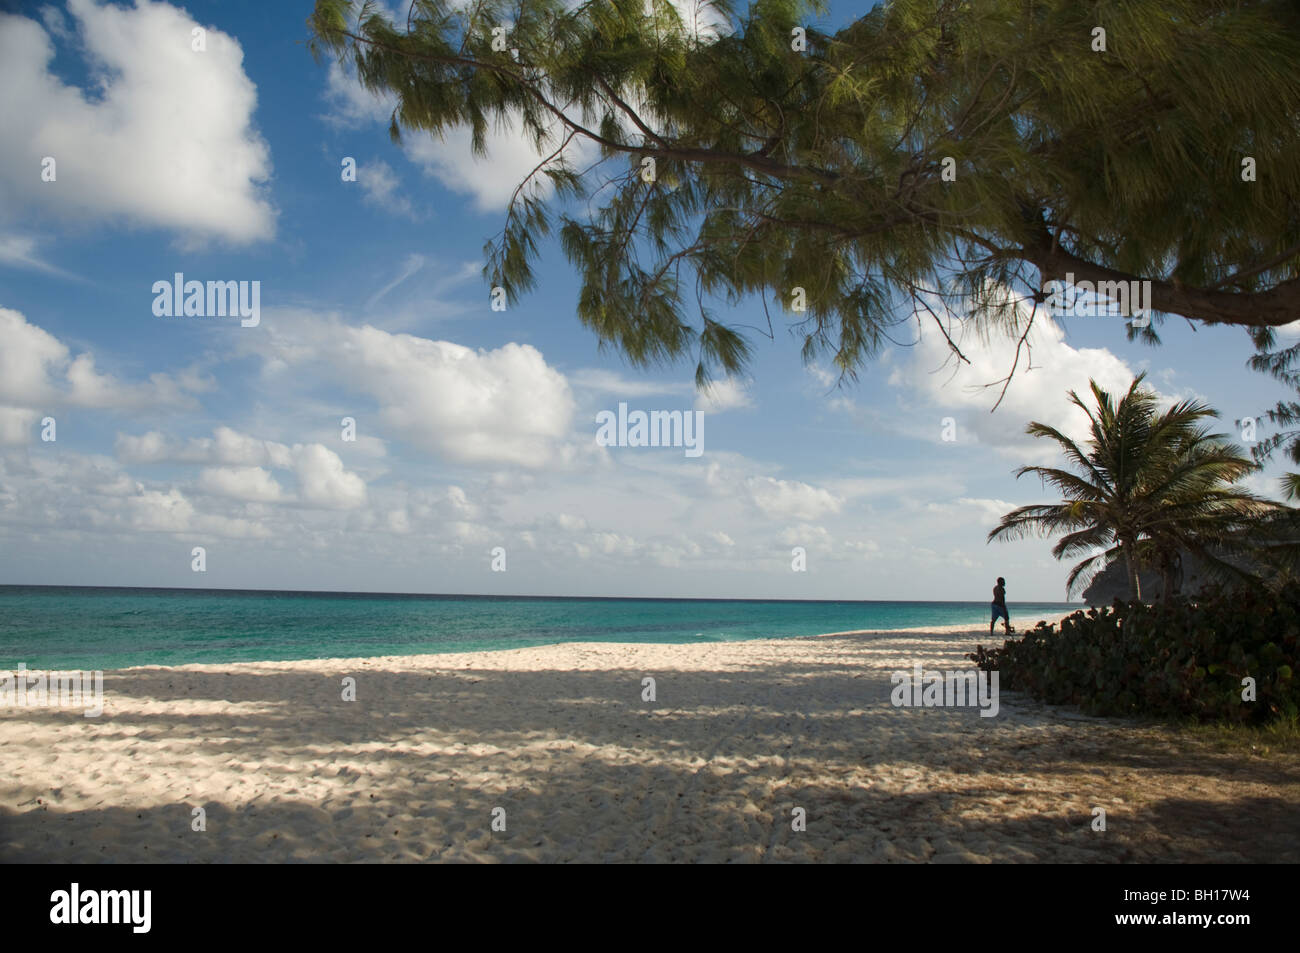 La plage de Foul Bay sur la côte sud-est de la Barbade, les îles du Vent, les Caraïbes Banque D'Images